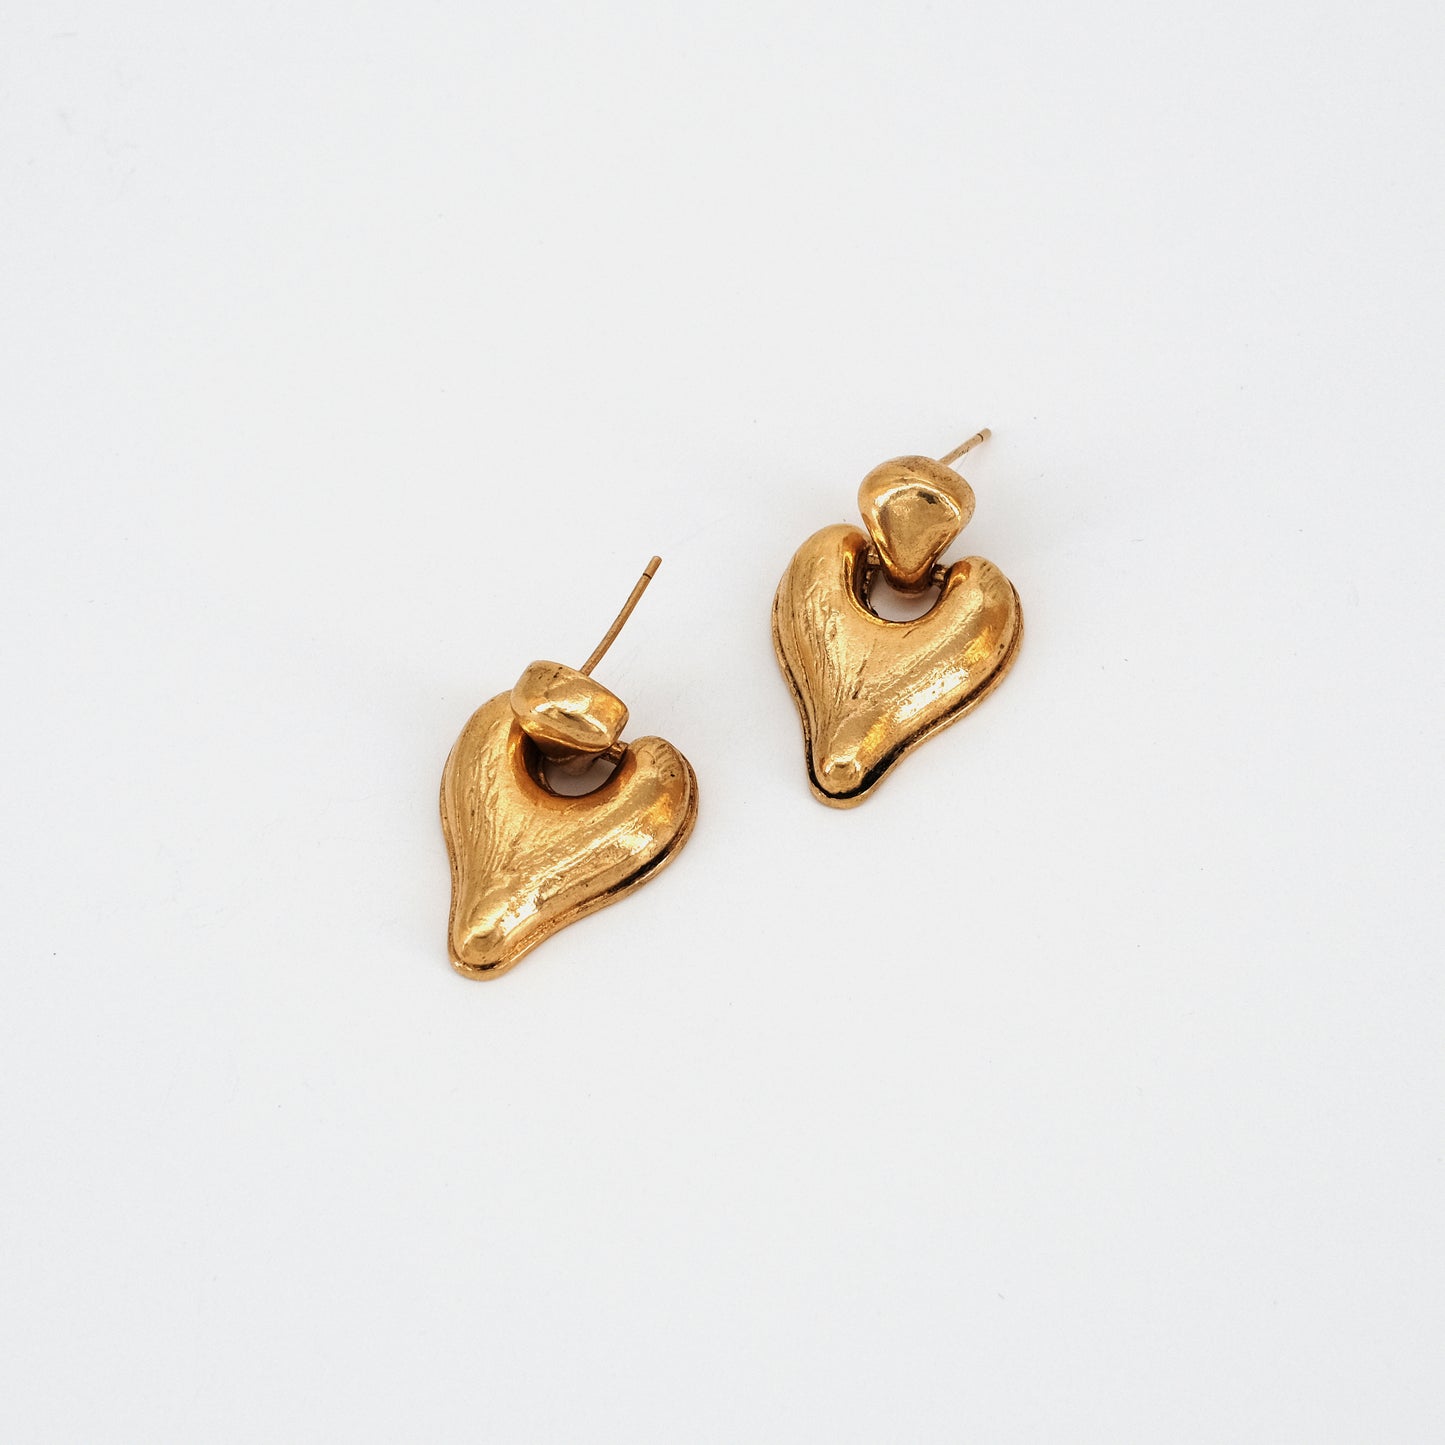 Hua earrings